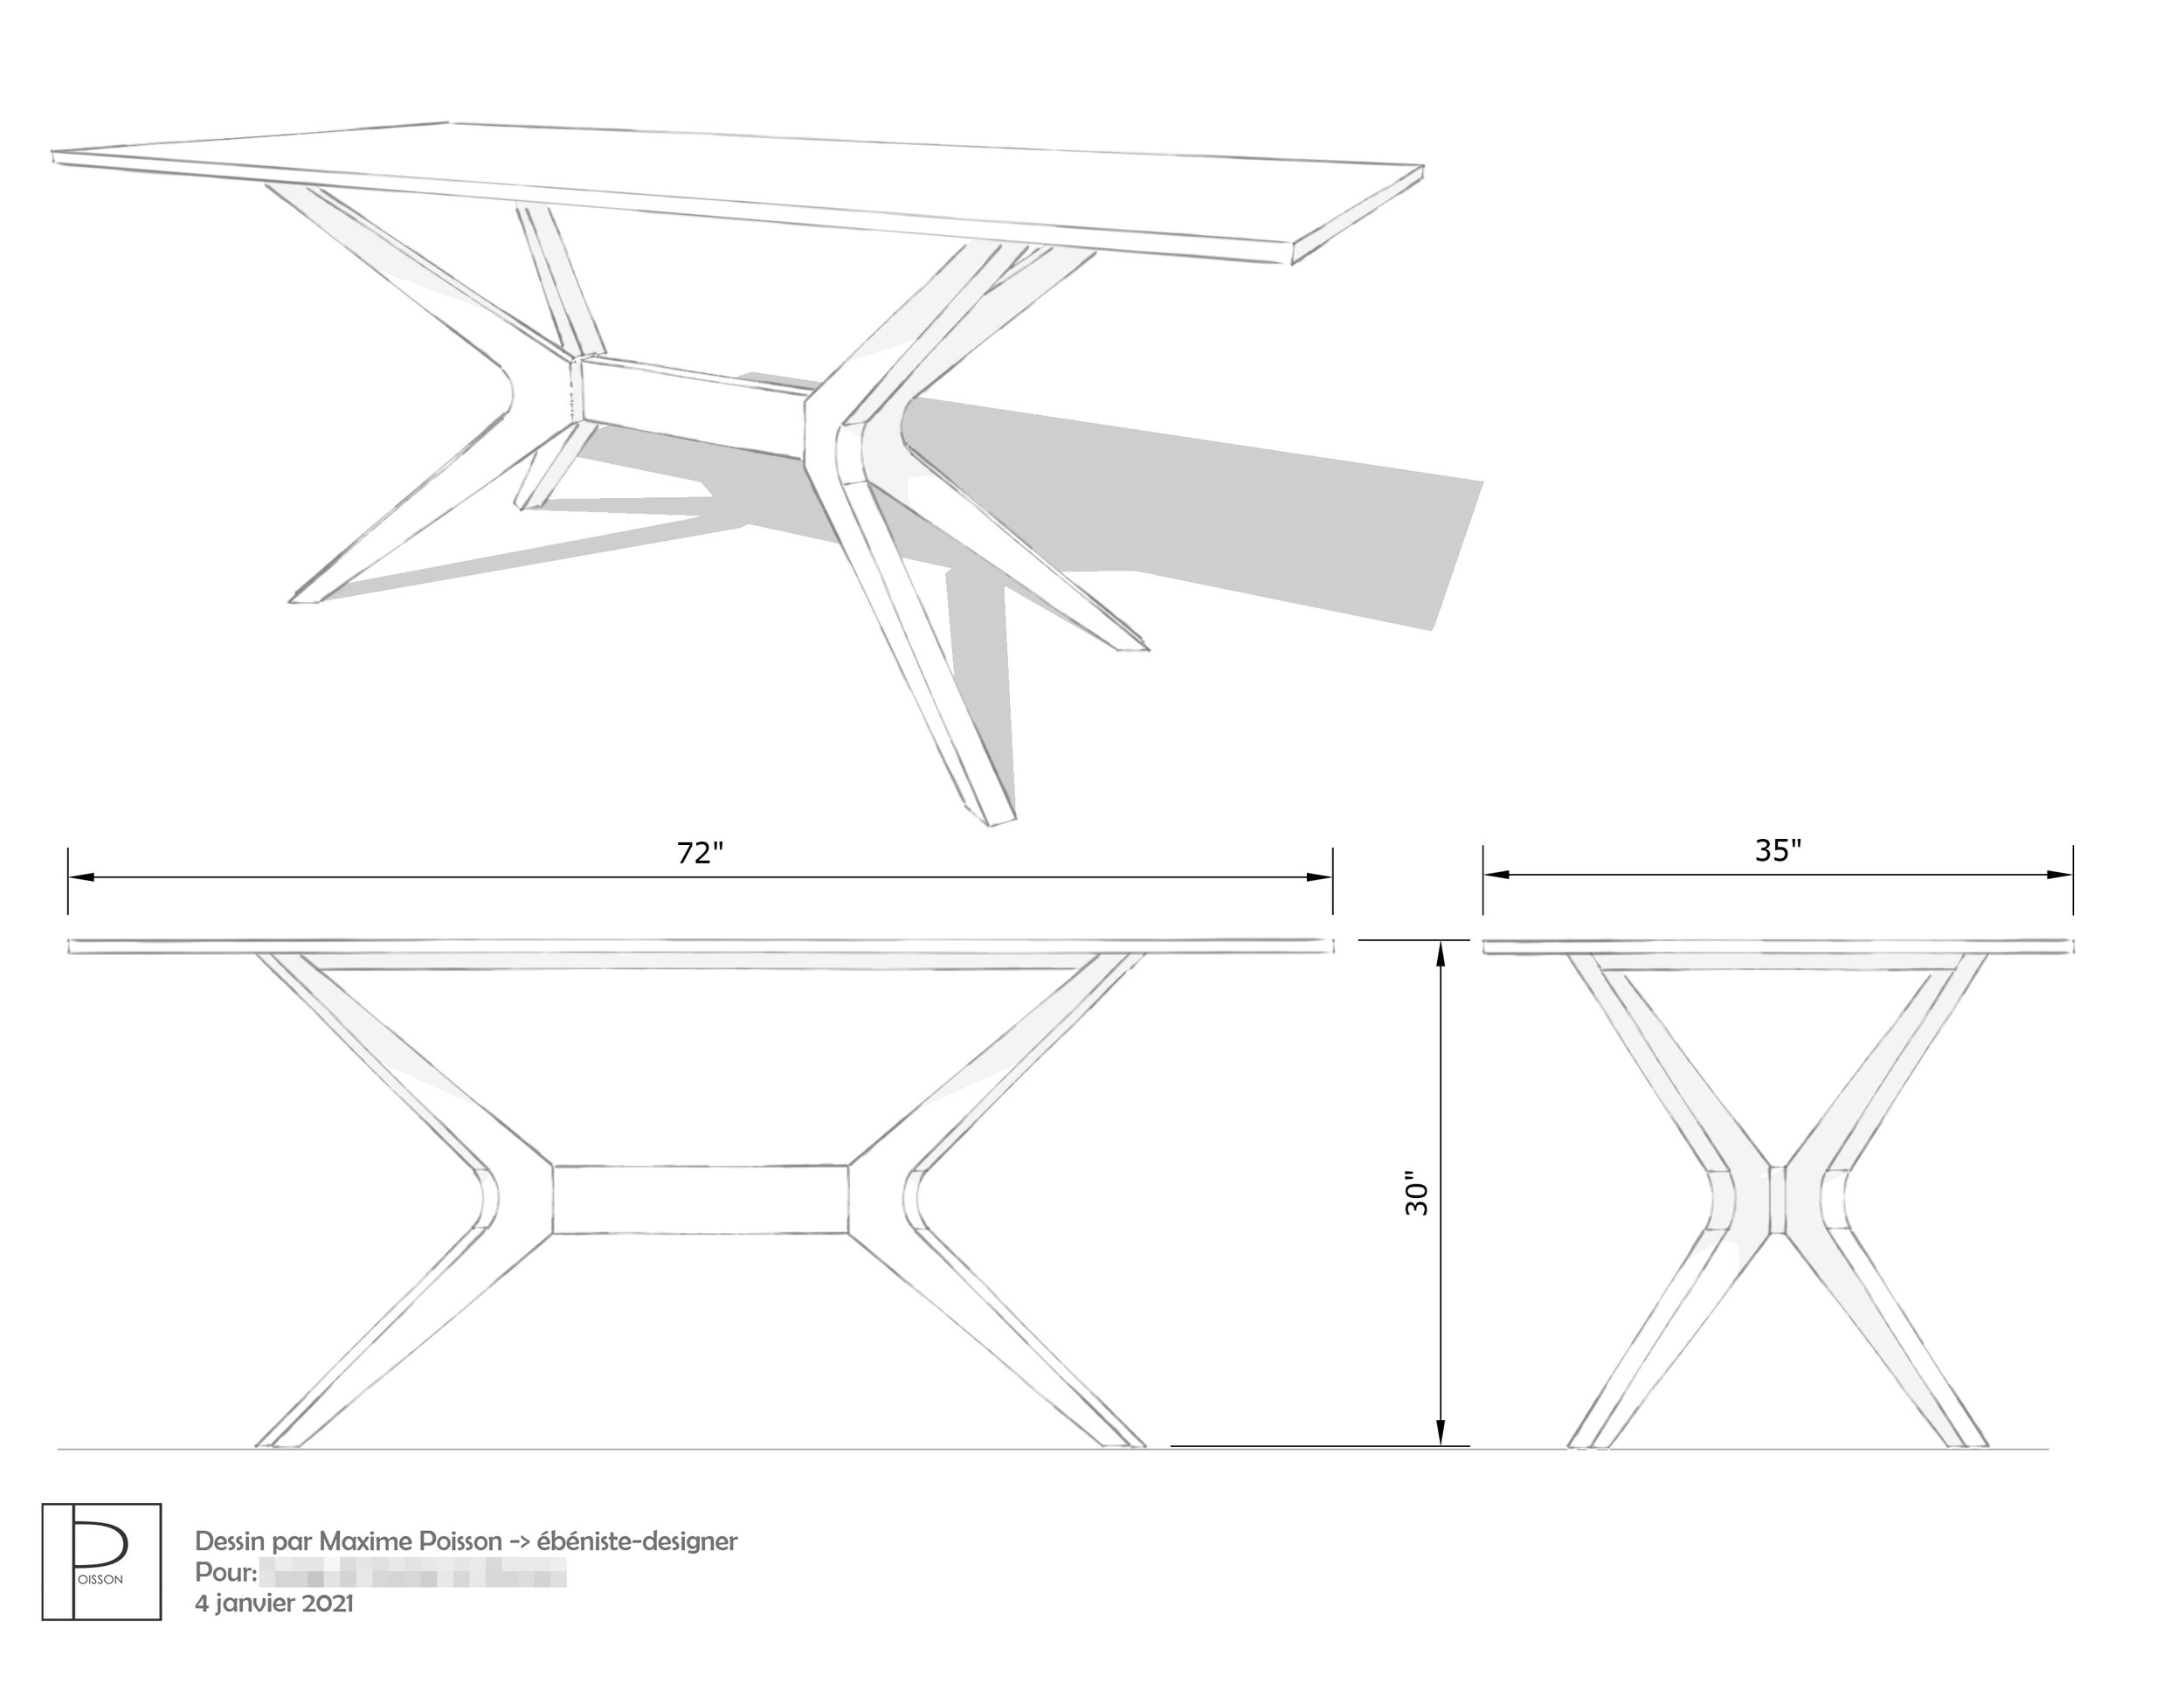 Dessin 3 dimensions d'une table de cuisine